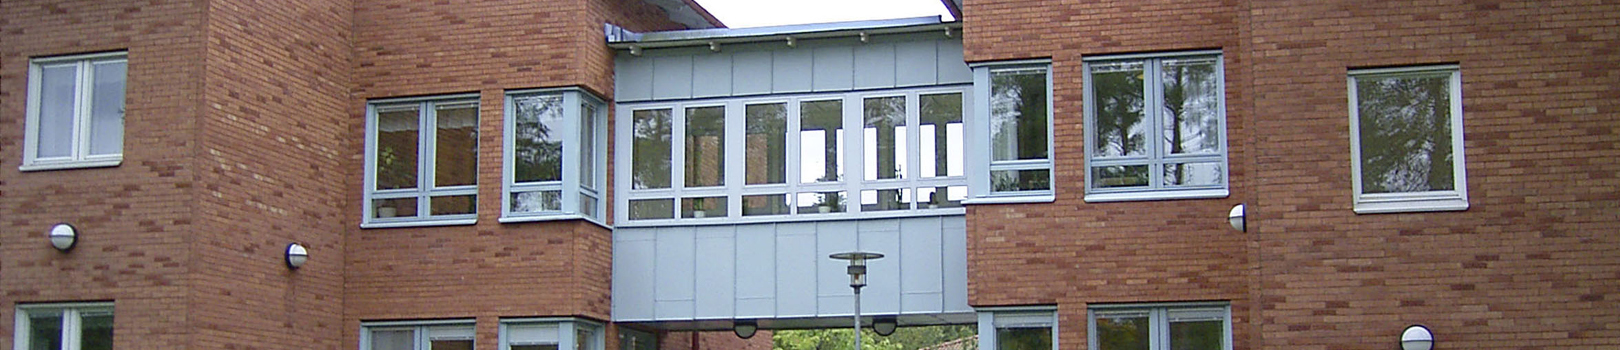 Fasad över Ankarets behandlingshem. Röd tegelbyggnad med vita fönsterkarmar.